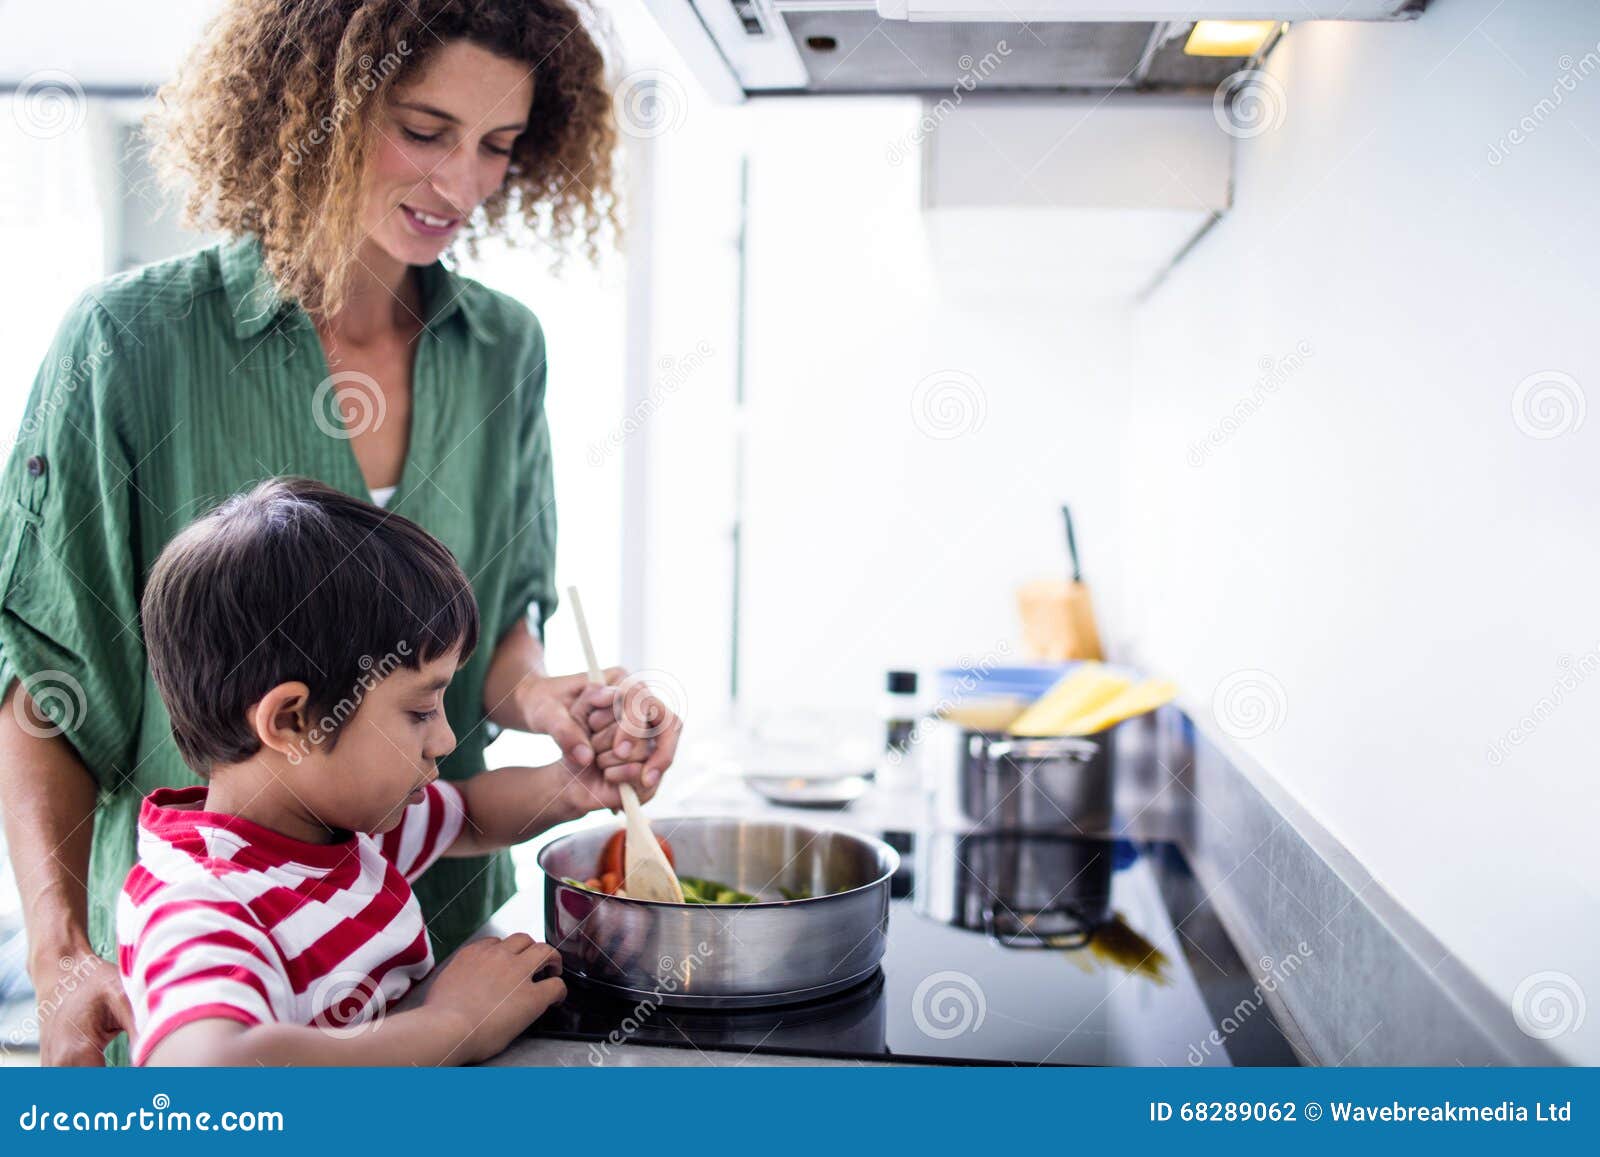 Сын мать на кухне видео. Семья на кухне. Счастливая семья на кухне. Мама с ребенком на кухне. Мать и сын готовят.